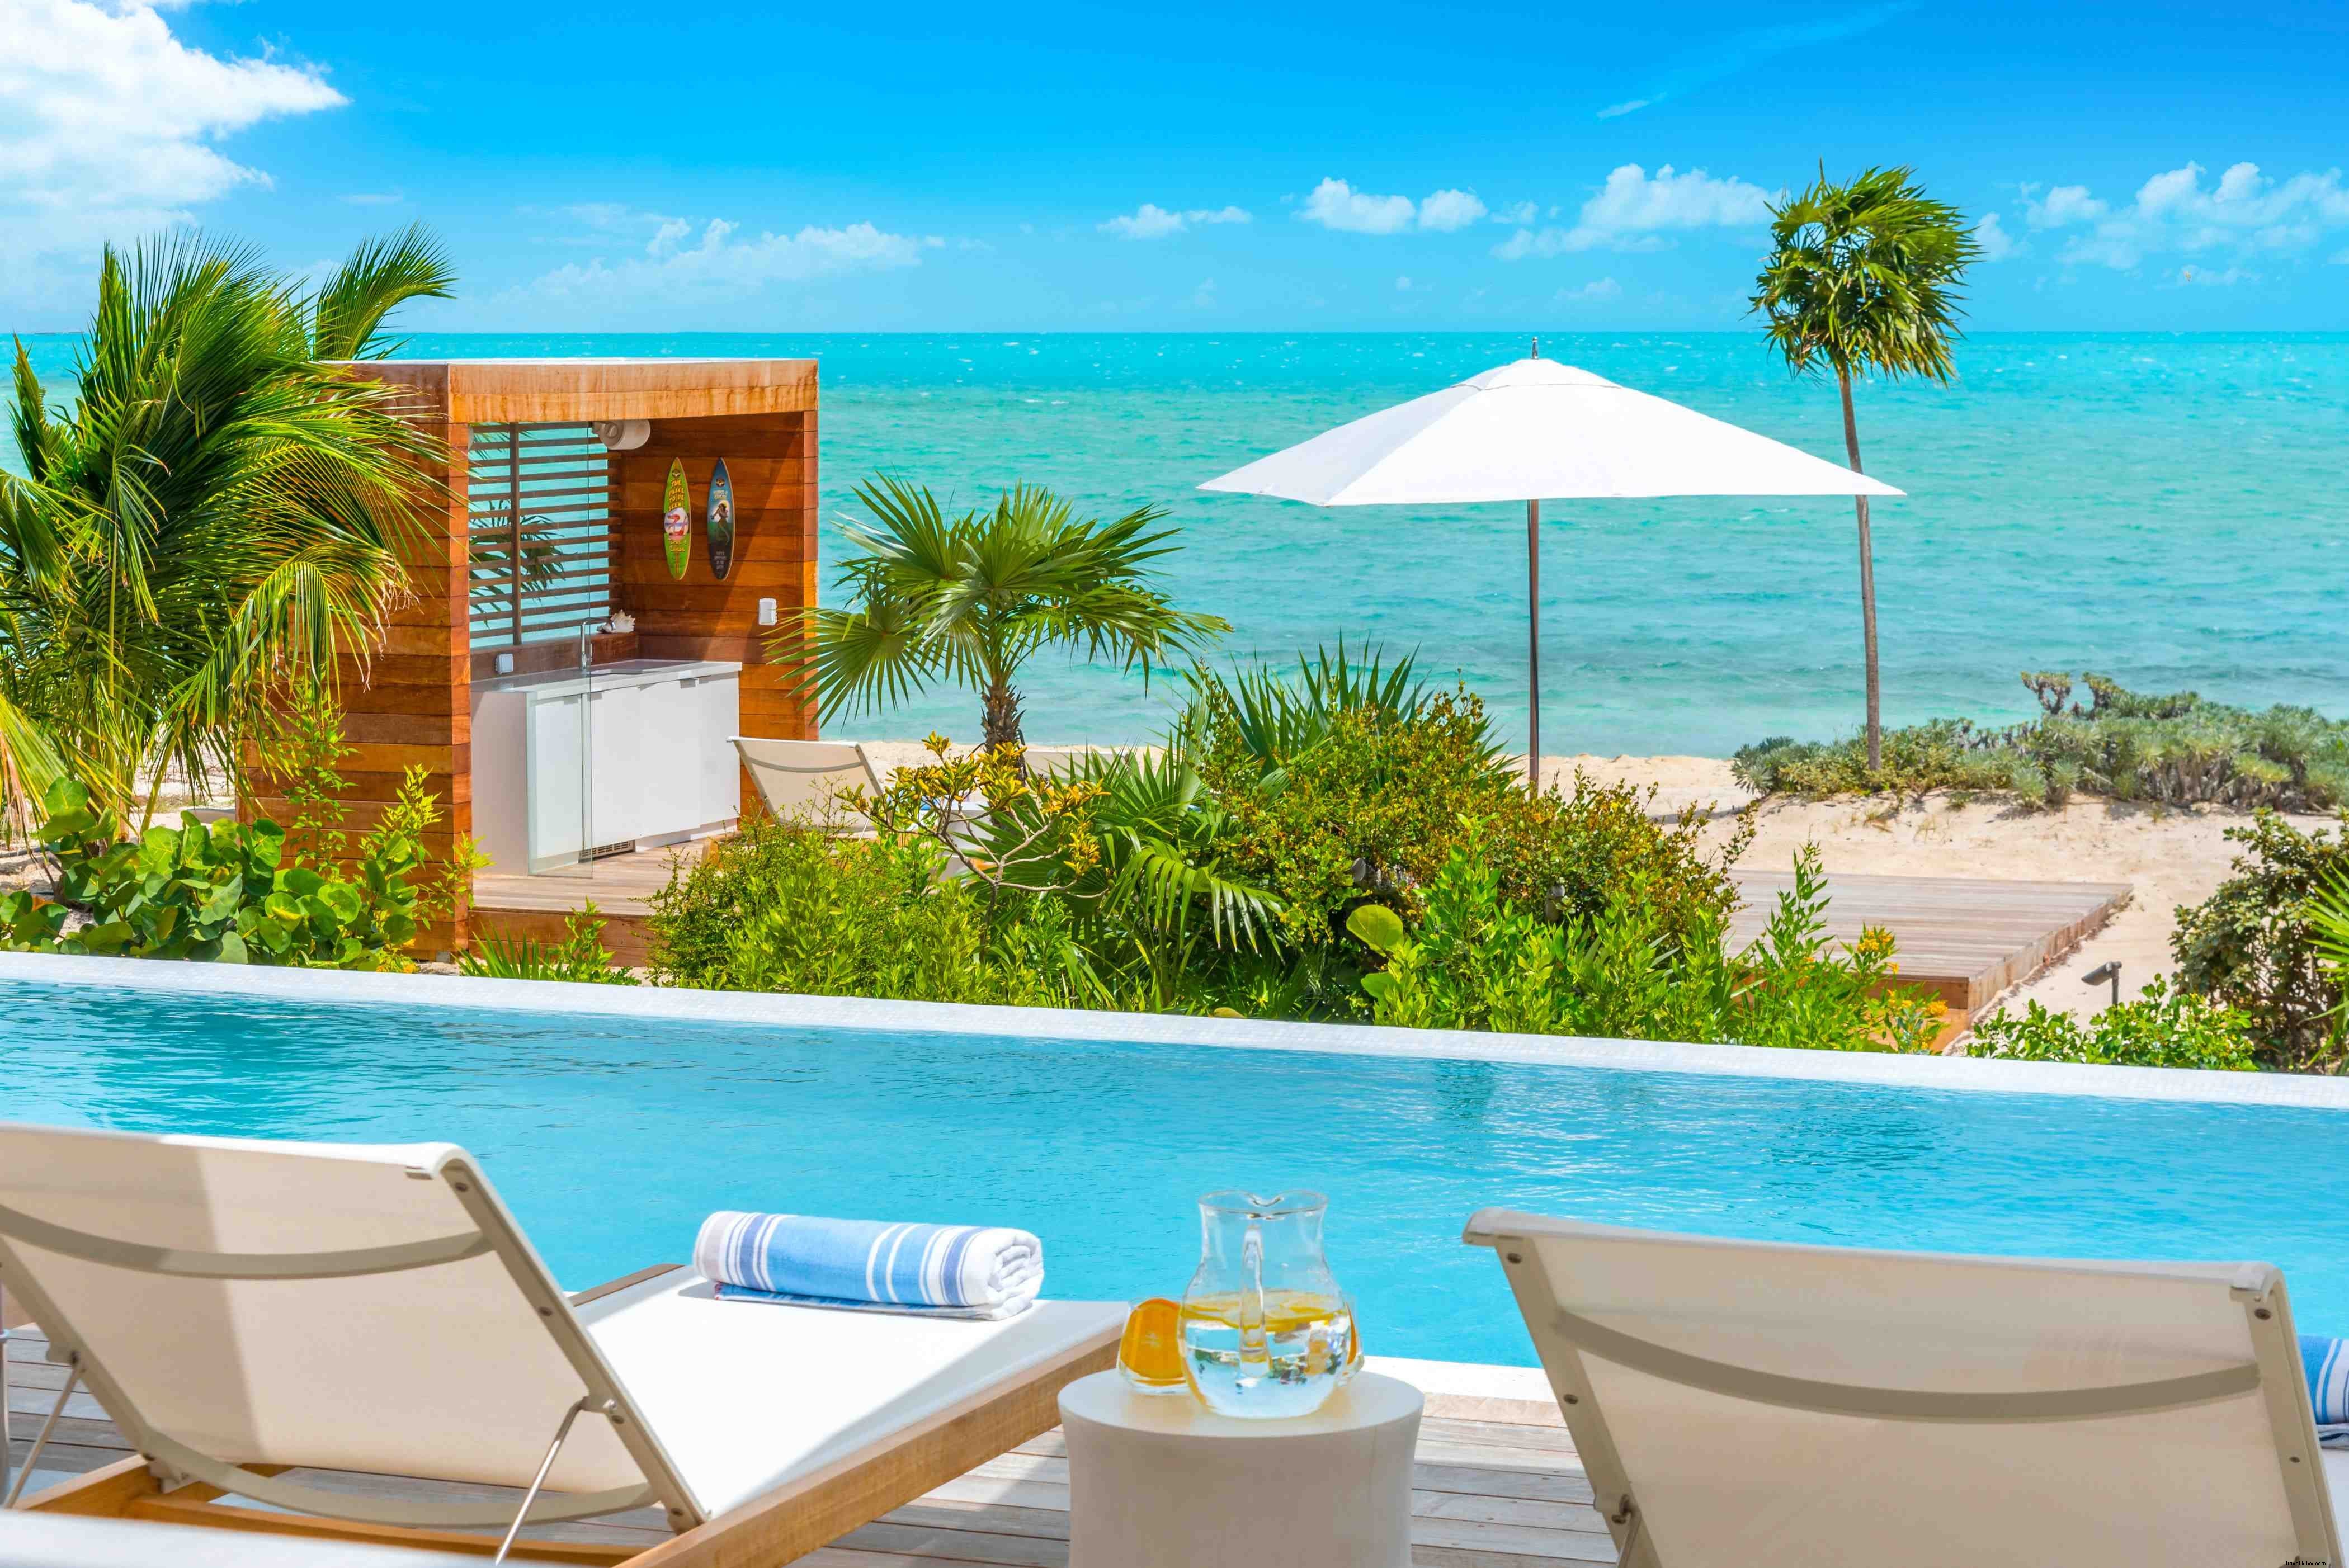 All interno del resort di Turks &Caicos dove le celebrità di serie A stanno acquistando proprietà 